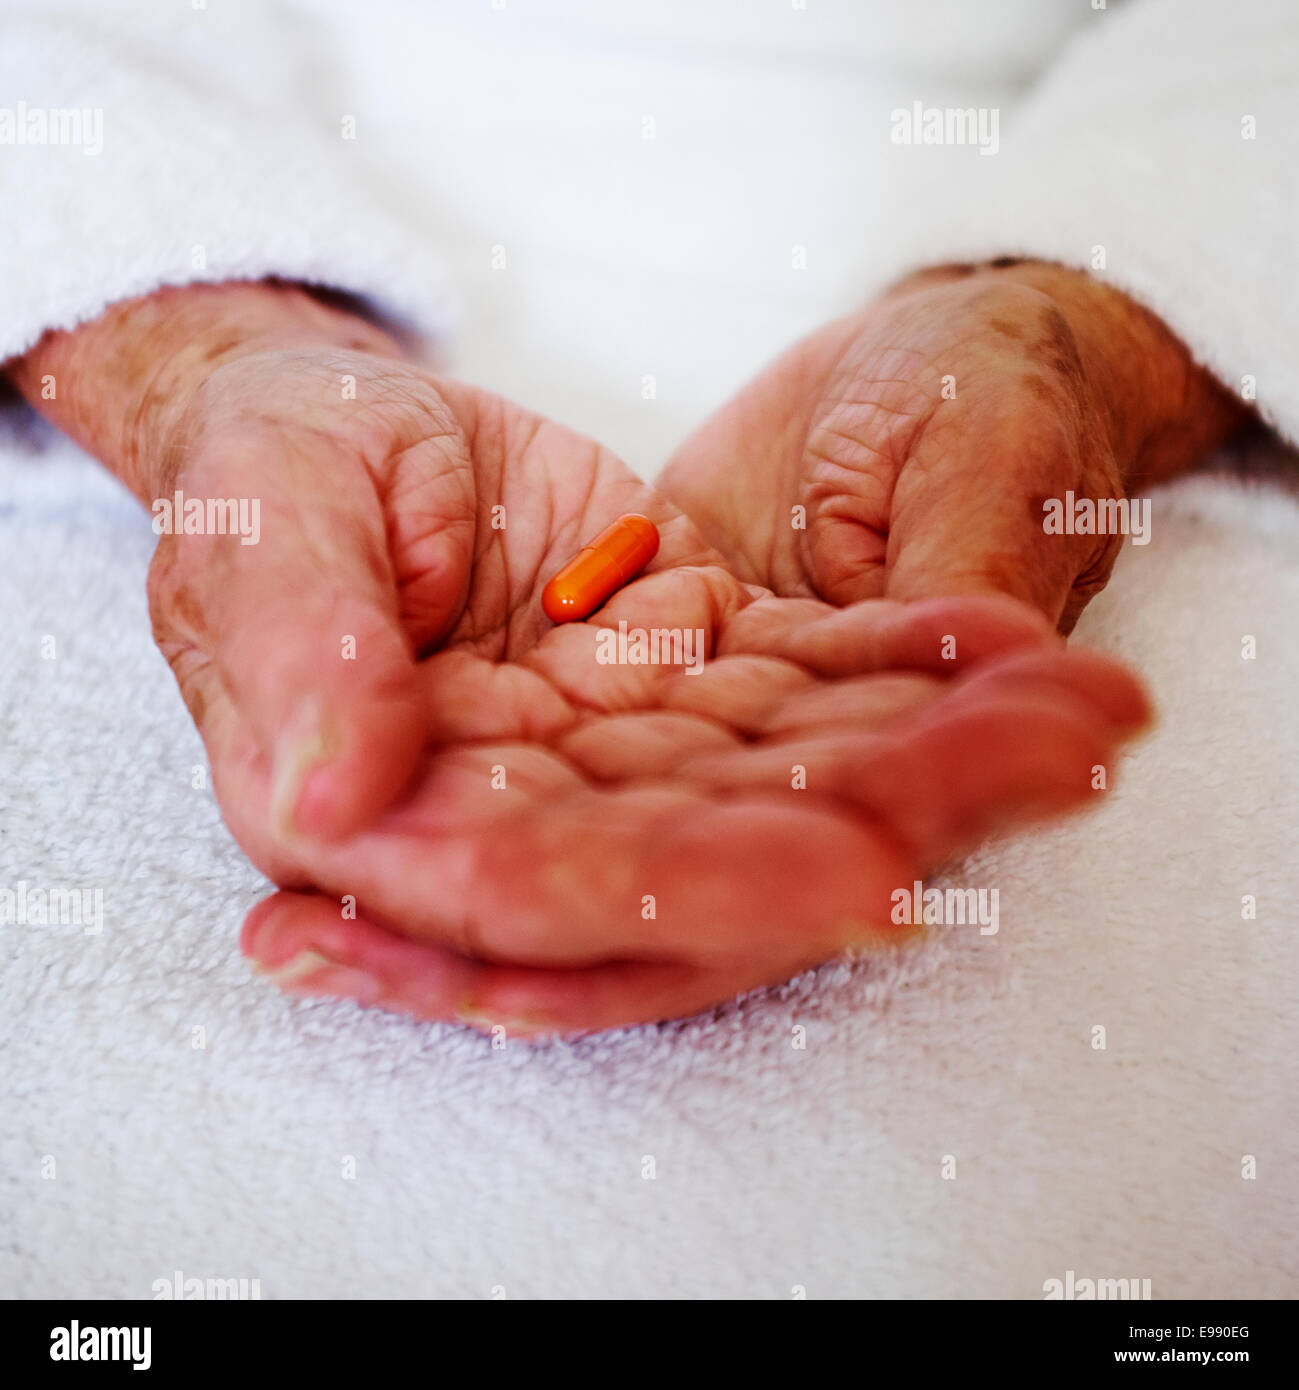 Senior persona con le mani in mano azienda Lipantil Fenofibrato Colesterolo capsula di prescrizione farmaci - assistenza sociale. Foto Stock